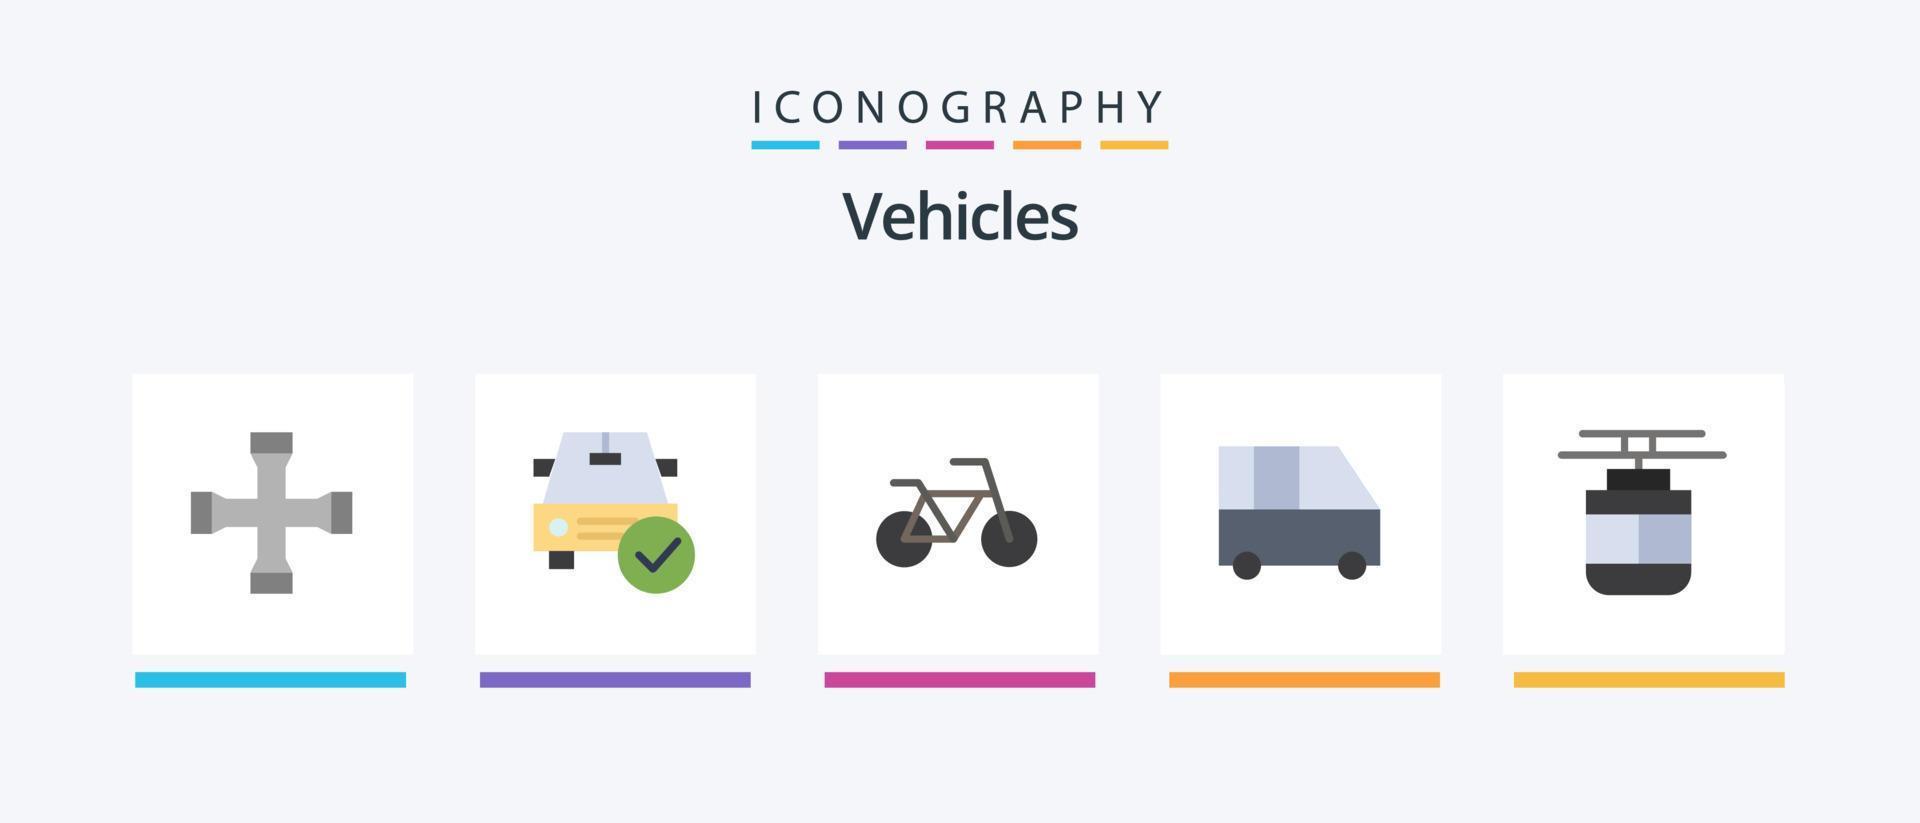 paquete de iconos planos de vehículos 5 que incluye tranvía. aire. está bien. camioneta de pasajeros furgoneta familiar. diseño de iconos creativos vector